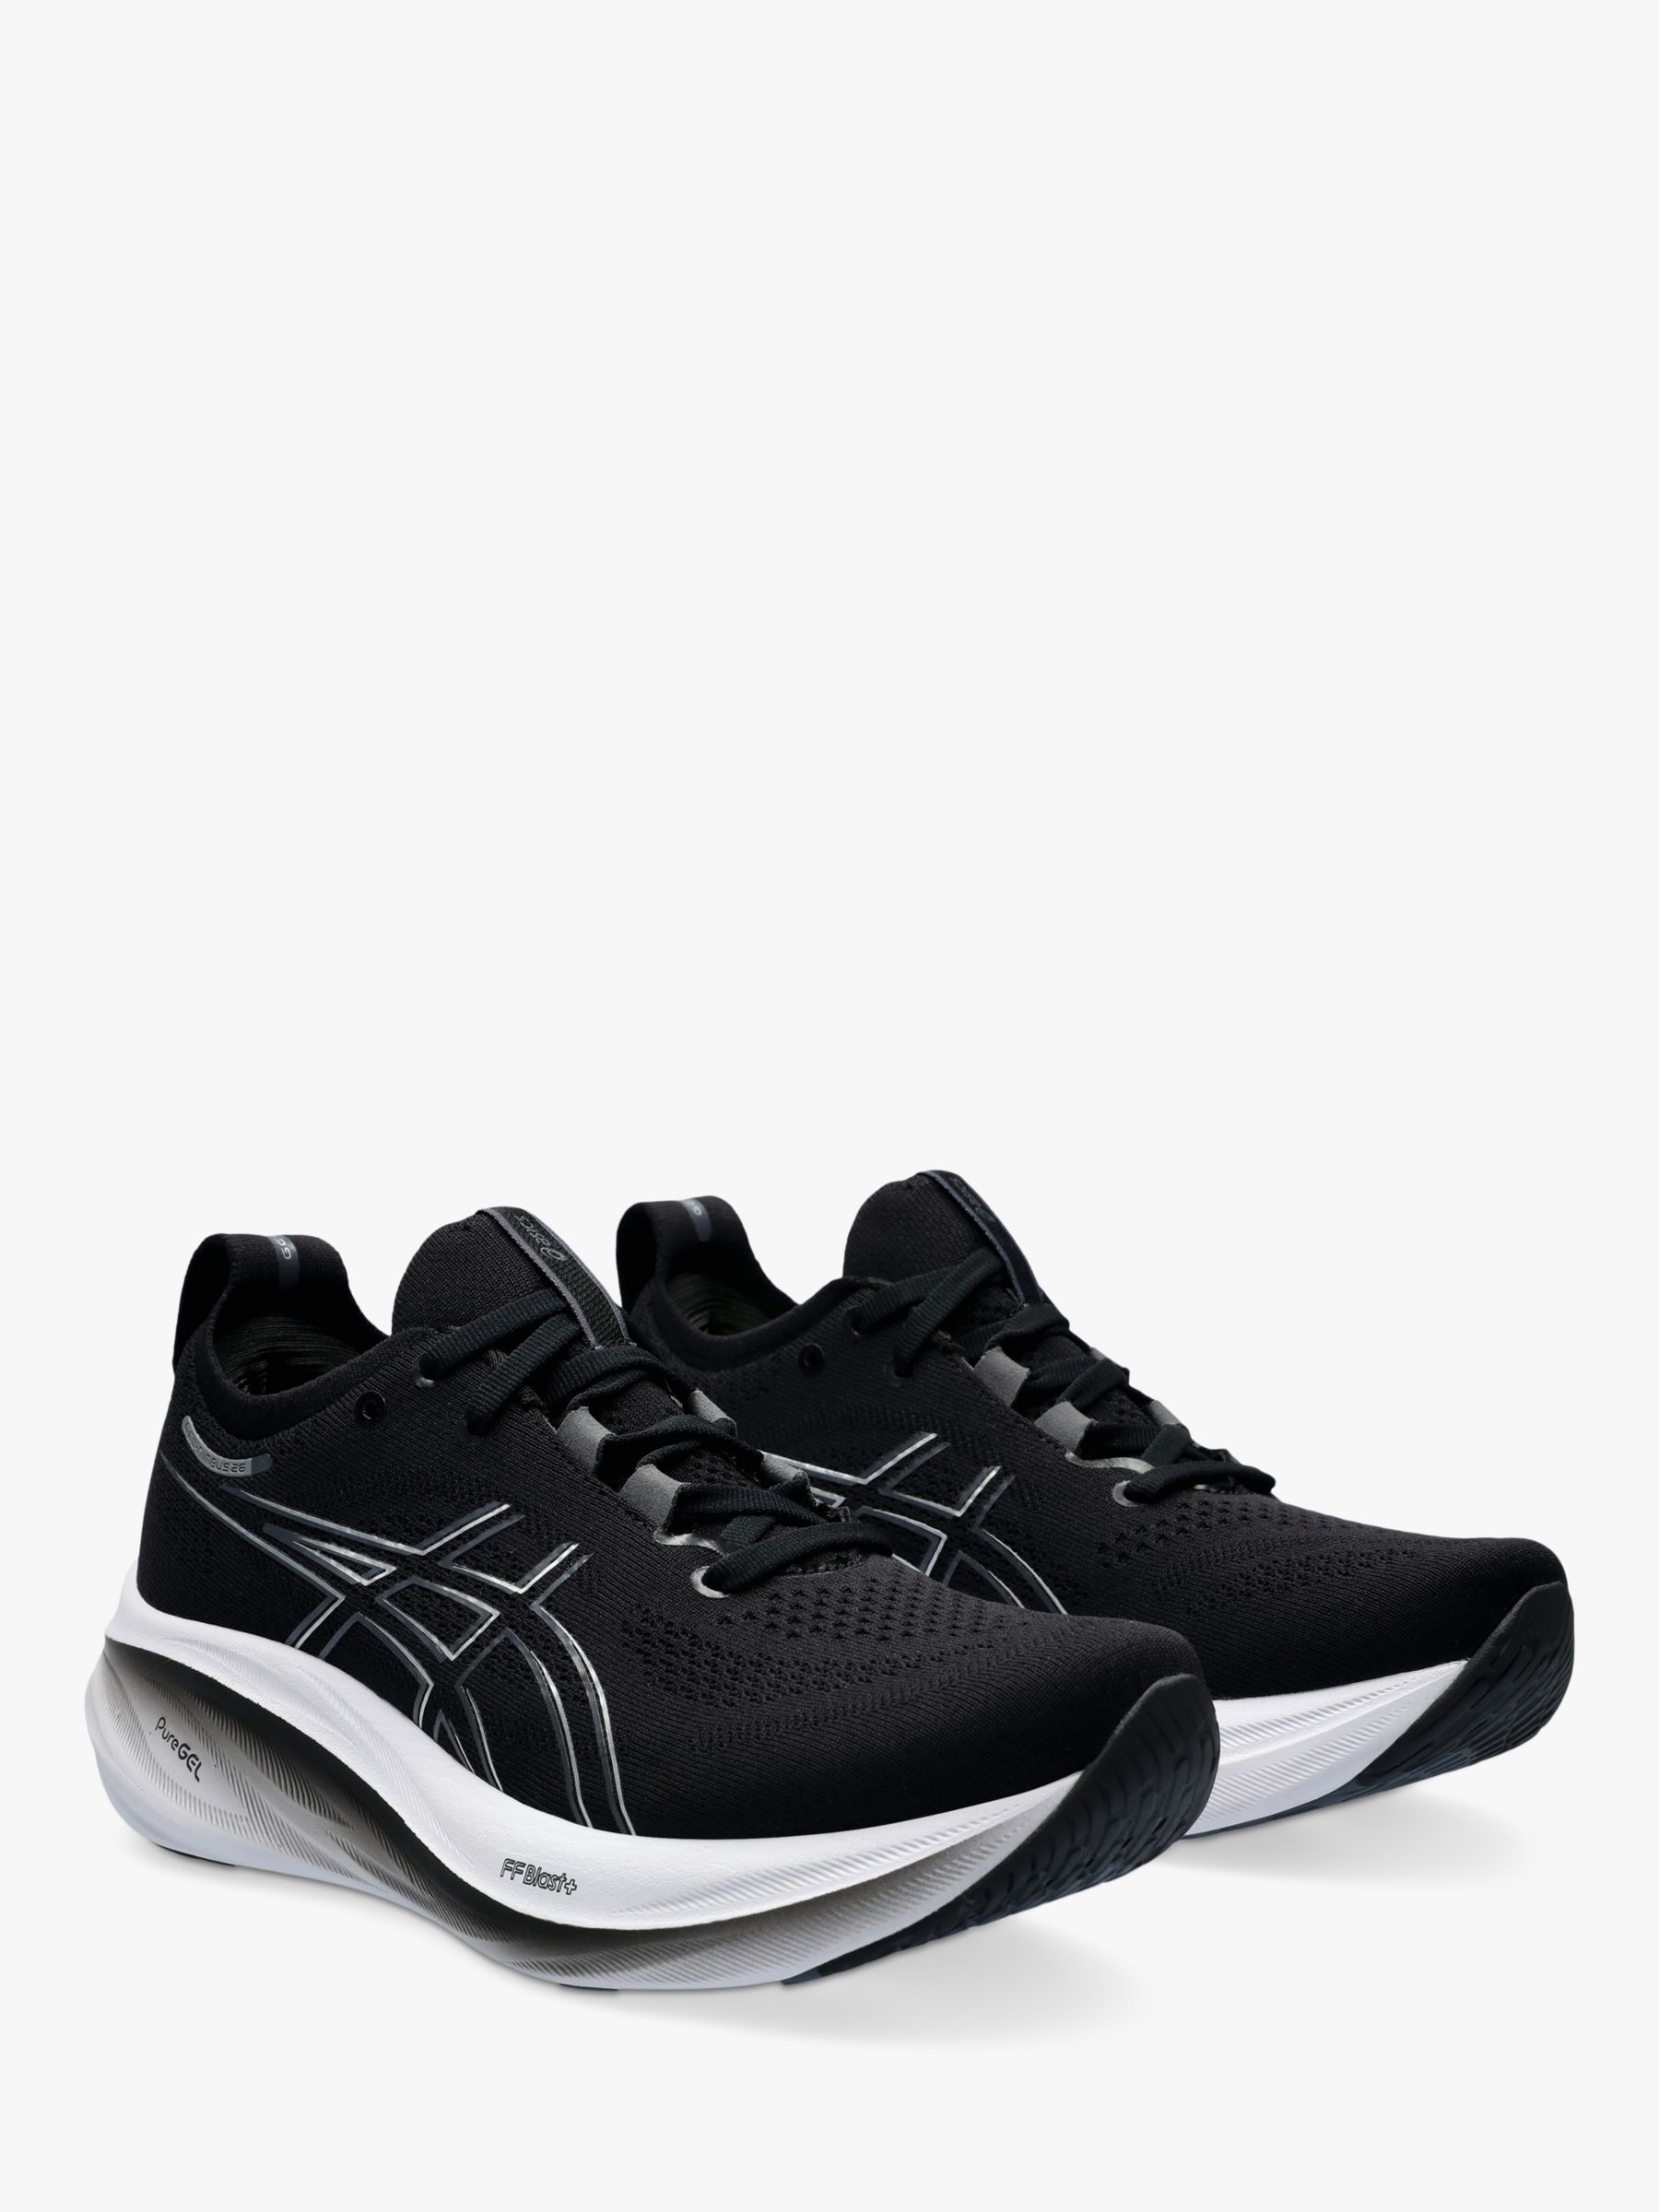 ASICS GEL-NIMBUS 26 Women's Running Shoes, Black/ Grey, 5.5